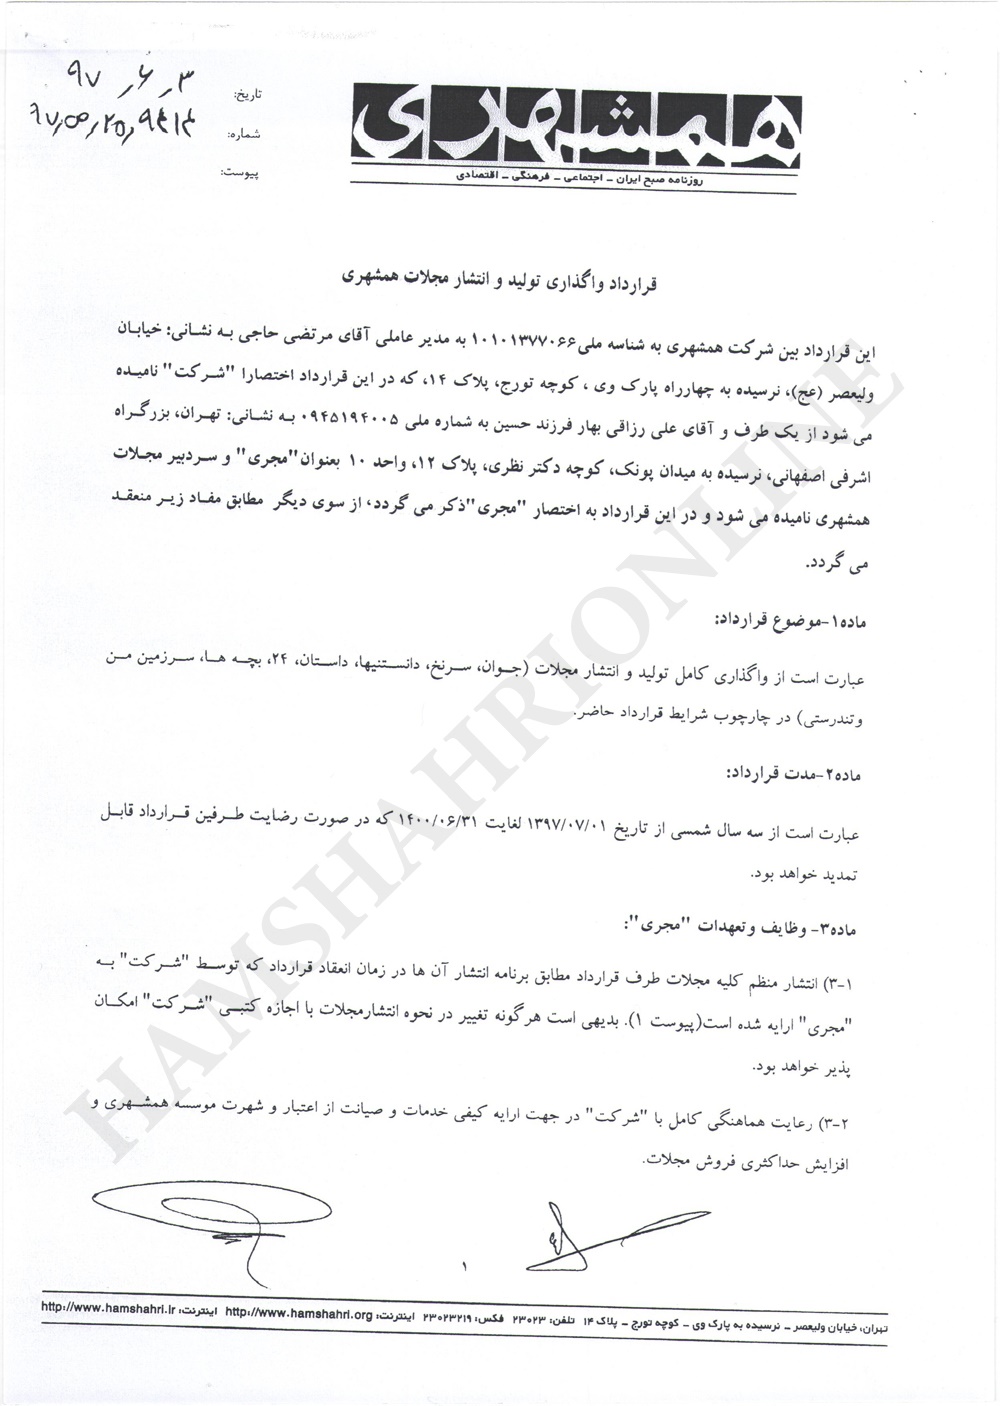 متن کامل قرارداد واگذاری تولید و انتشار مجلات همشهری 